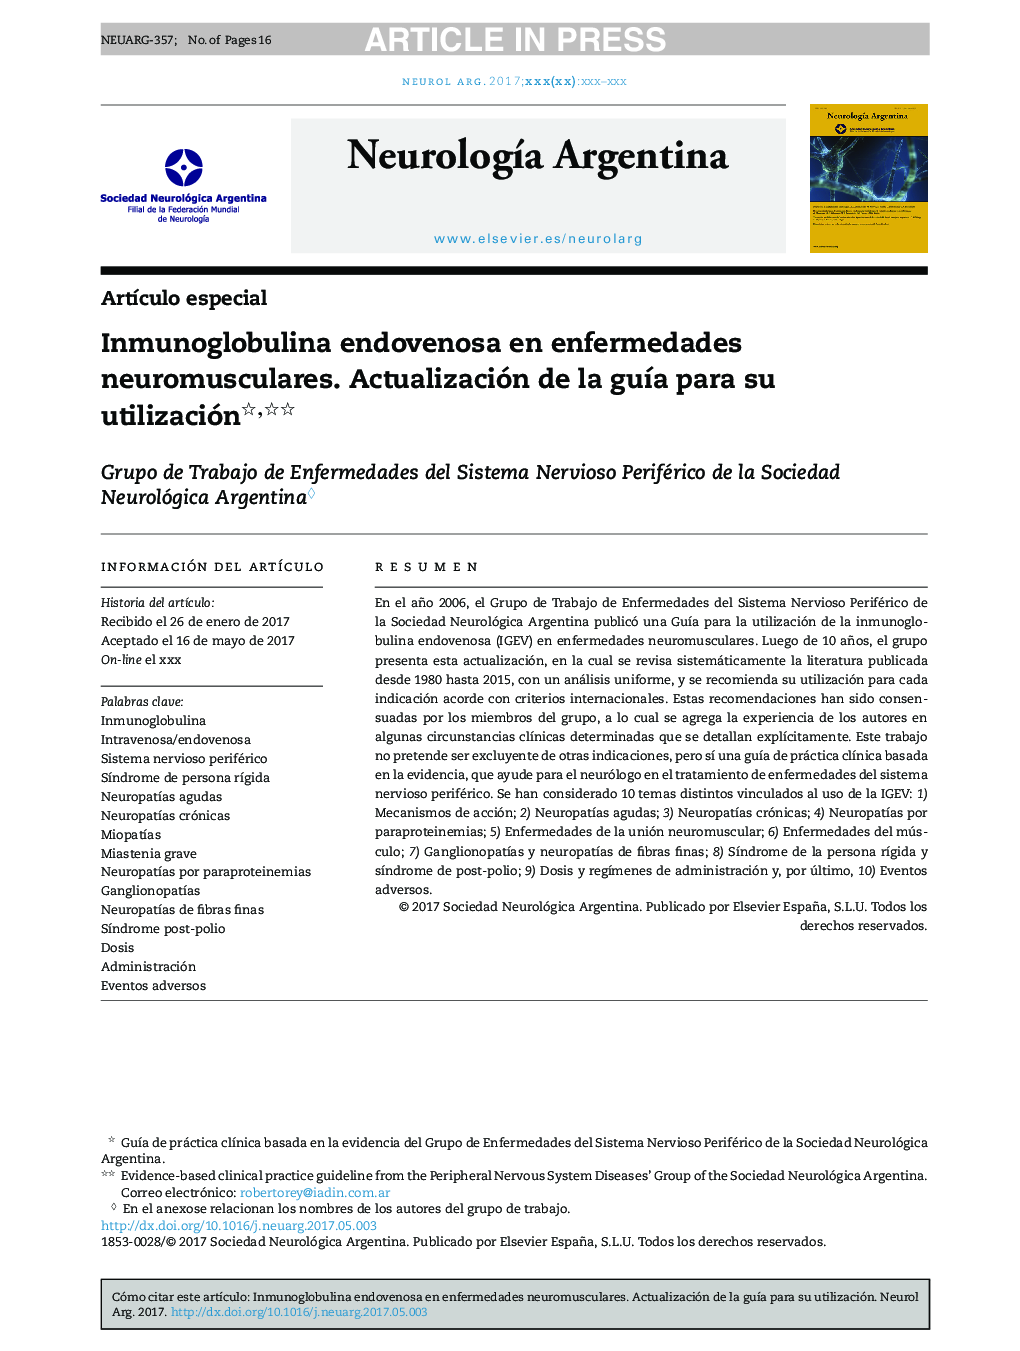 Inmunoglobulina endovenosa en enfermedades neuromusculares. Actualización de la guÃ­a para su utilización